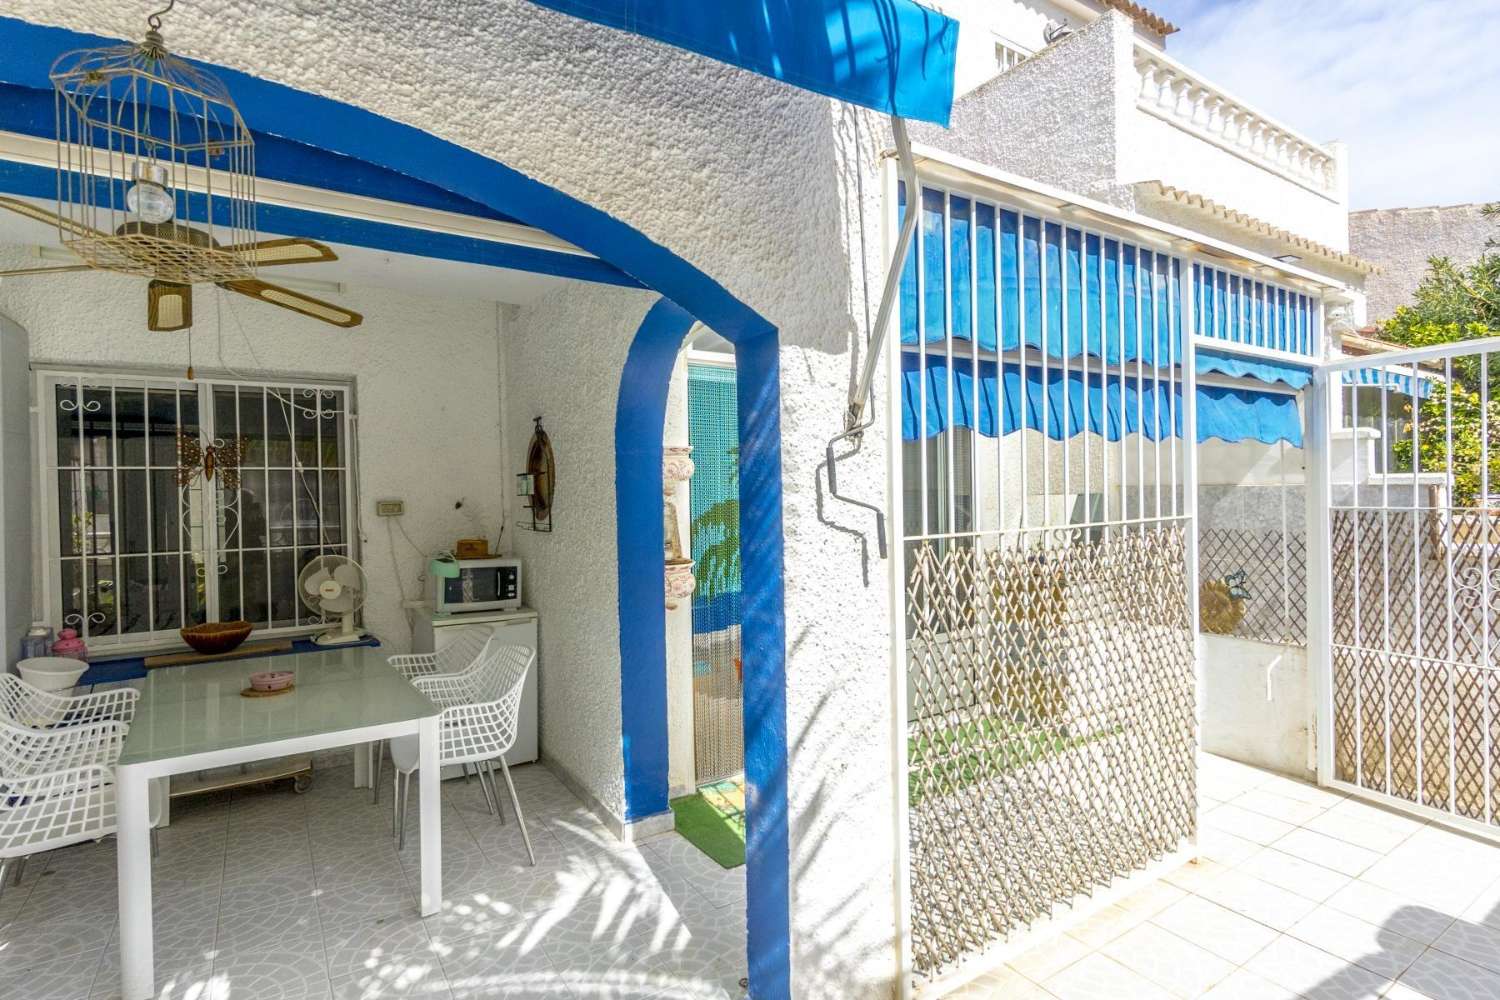 TORREVIEJA El Limonar, Charmant halfvrijstaand huis met 2 slaapkamers, gerenoveerd, met gemeenschappelijk zwembad